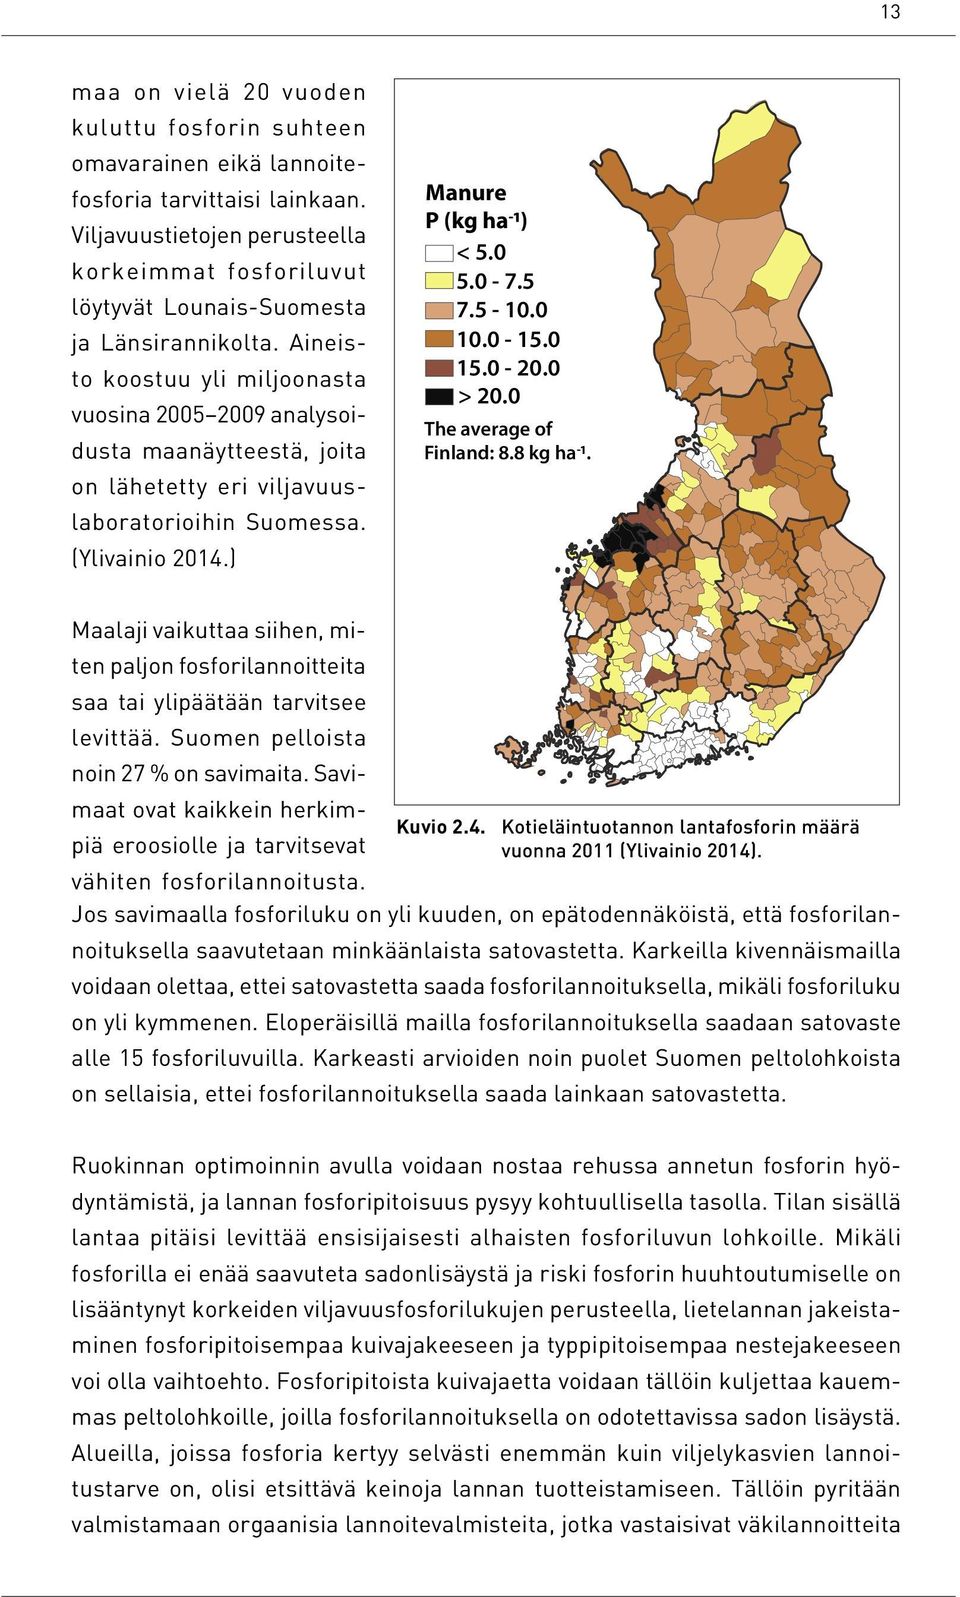 Aineisto koostuu yli miljoonasta vuosina 2005 2009 analysoidusta maanäytteestä, joita on lähetetty eri viljavuuslaboratorioihin Suomessa. (Ylivainio 2014.) Manure P (kg ha-1) < 5.0 5.0-7.5 7.5-10.